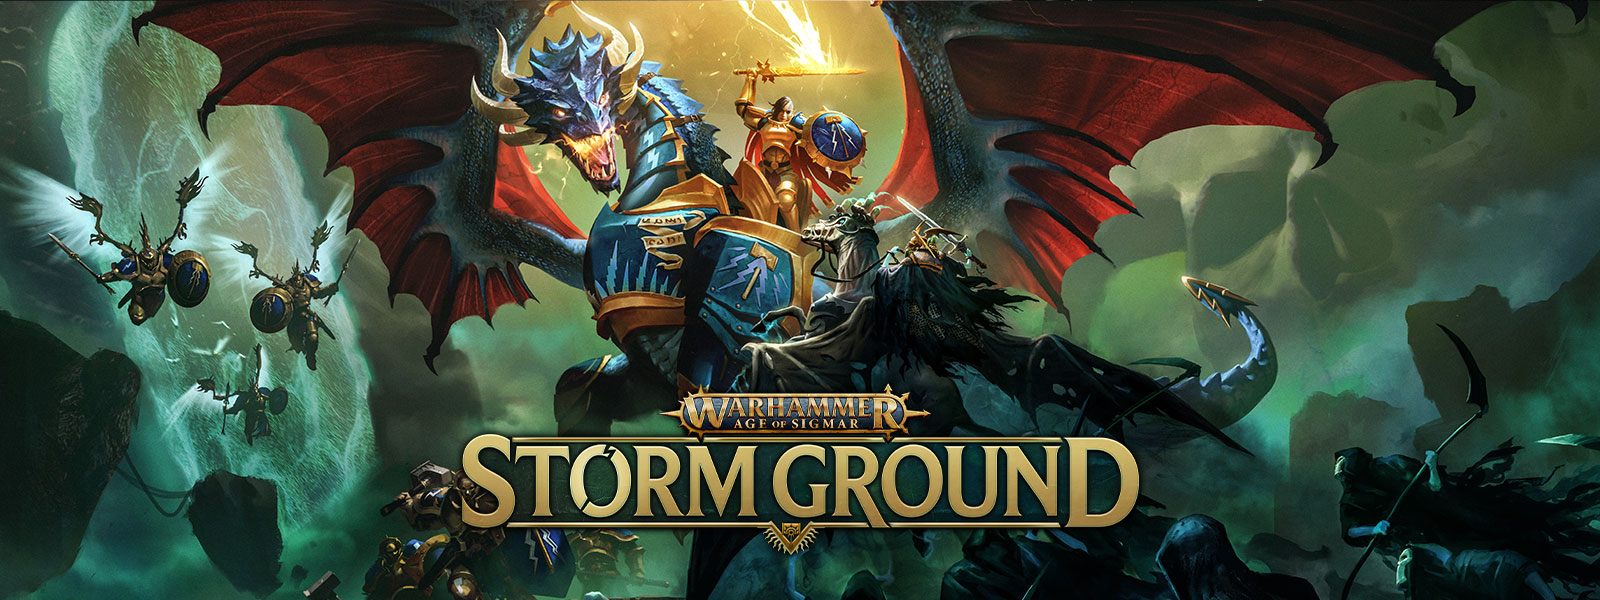 Warhammer Age of Sigmar: Storm Ground, Een krijger op een gepantserde vliegende draak vecht tegen een skeletleger.